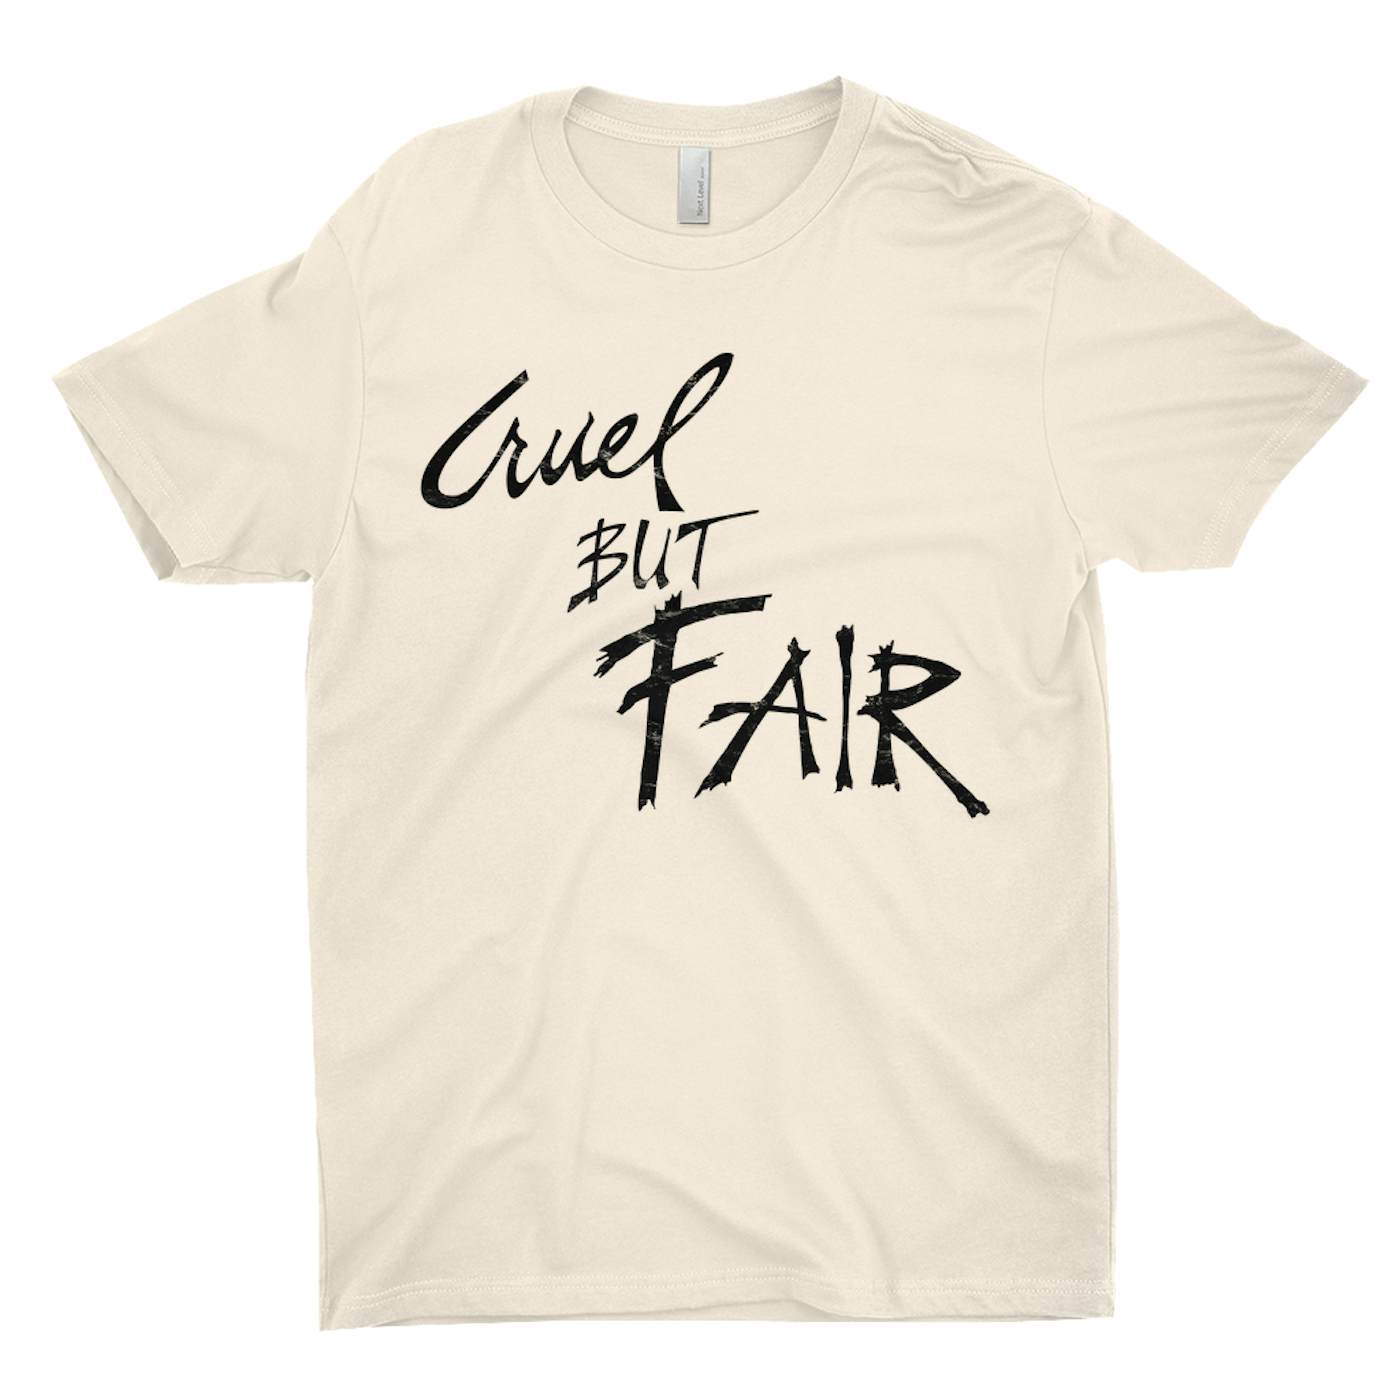 Rod Stewart T-Shirt | Cruel But Fair Worn By Rod Stewart Shirt